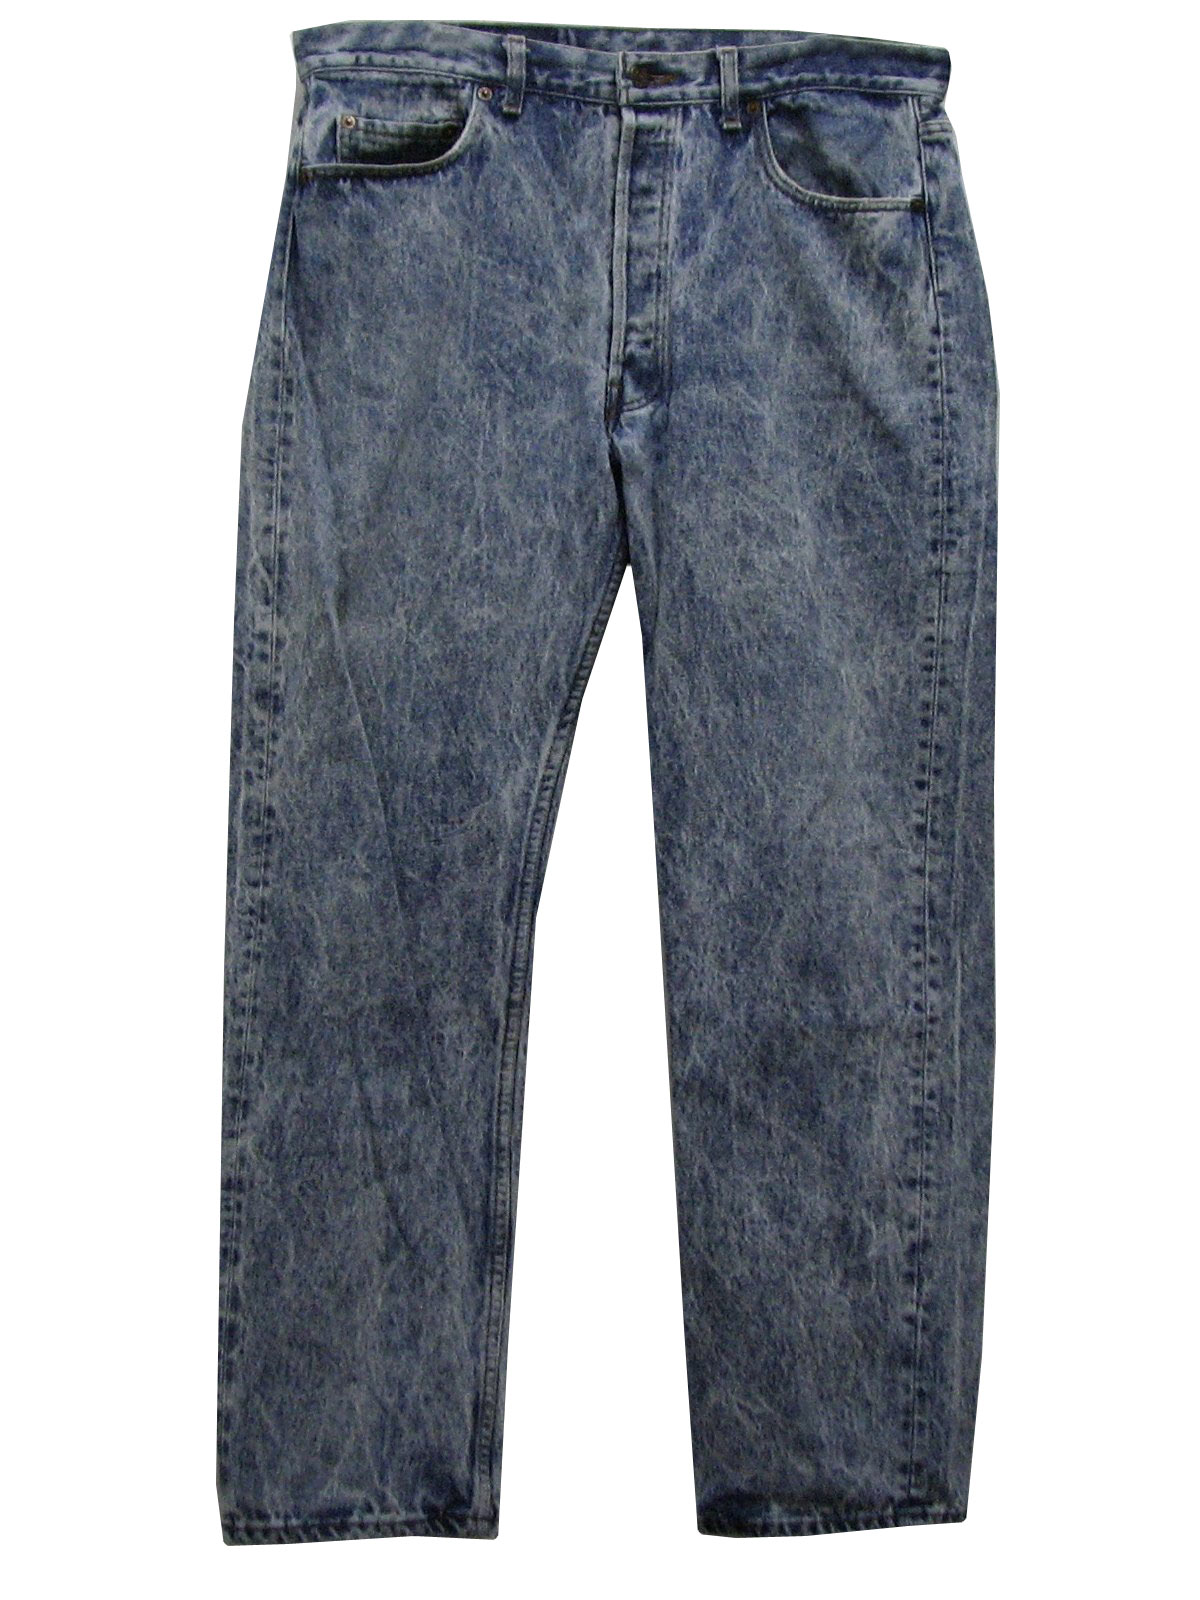 Vintage 80s Pants: 80s -Levis 501- Mens blue cotton acid wash denim ...